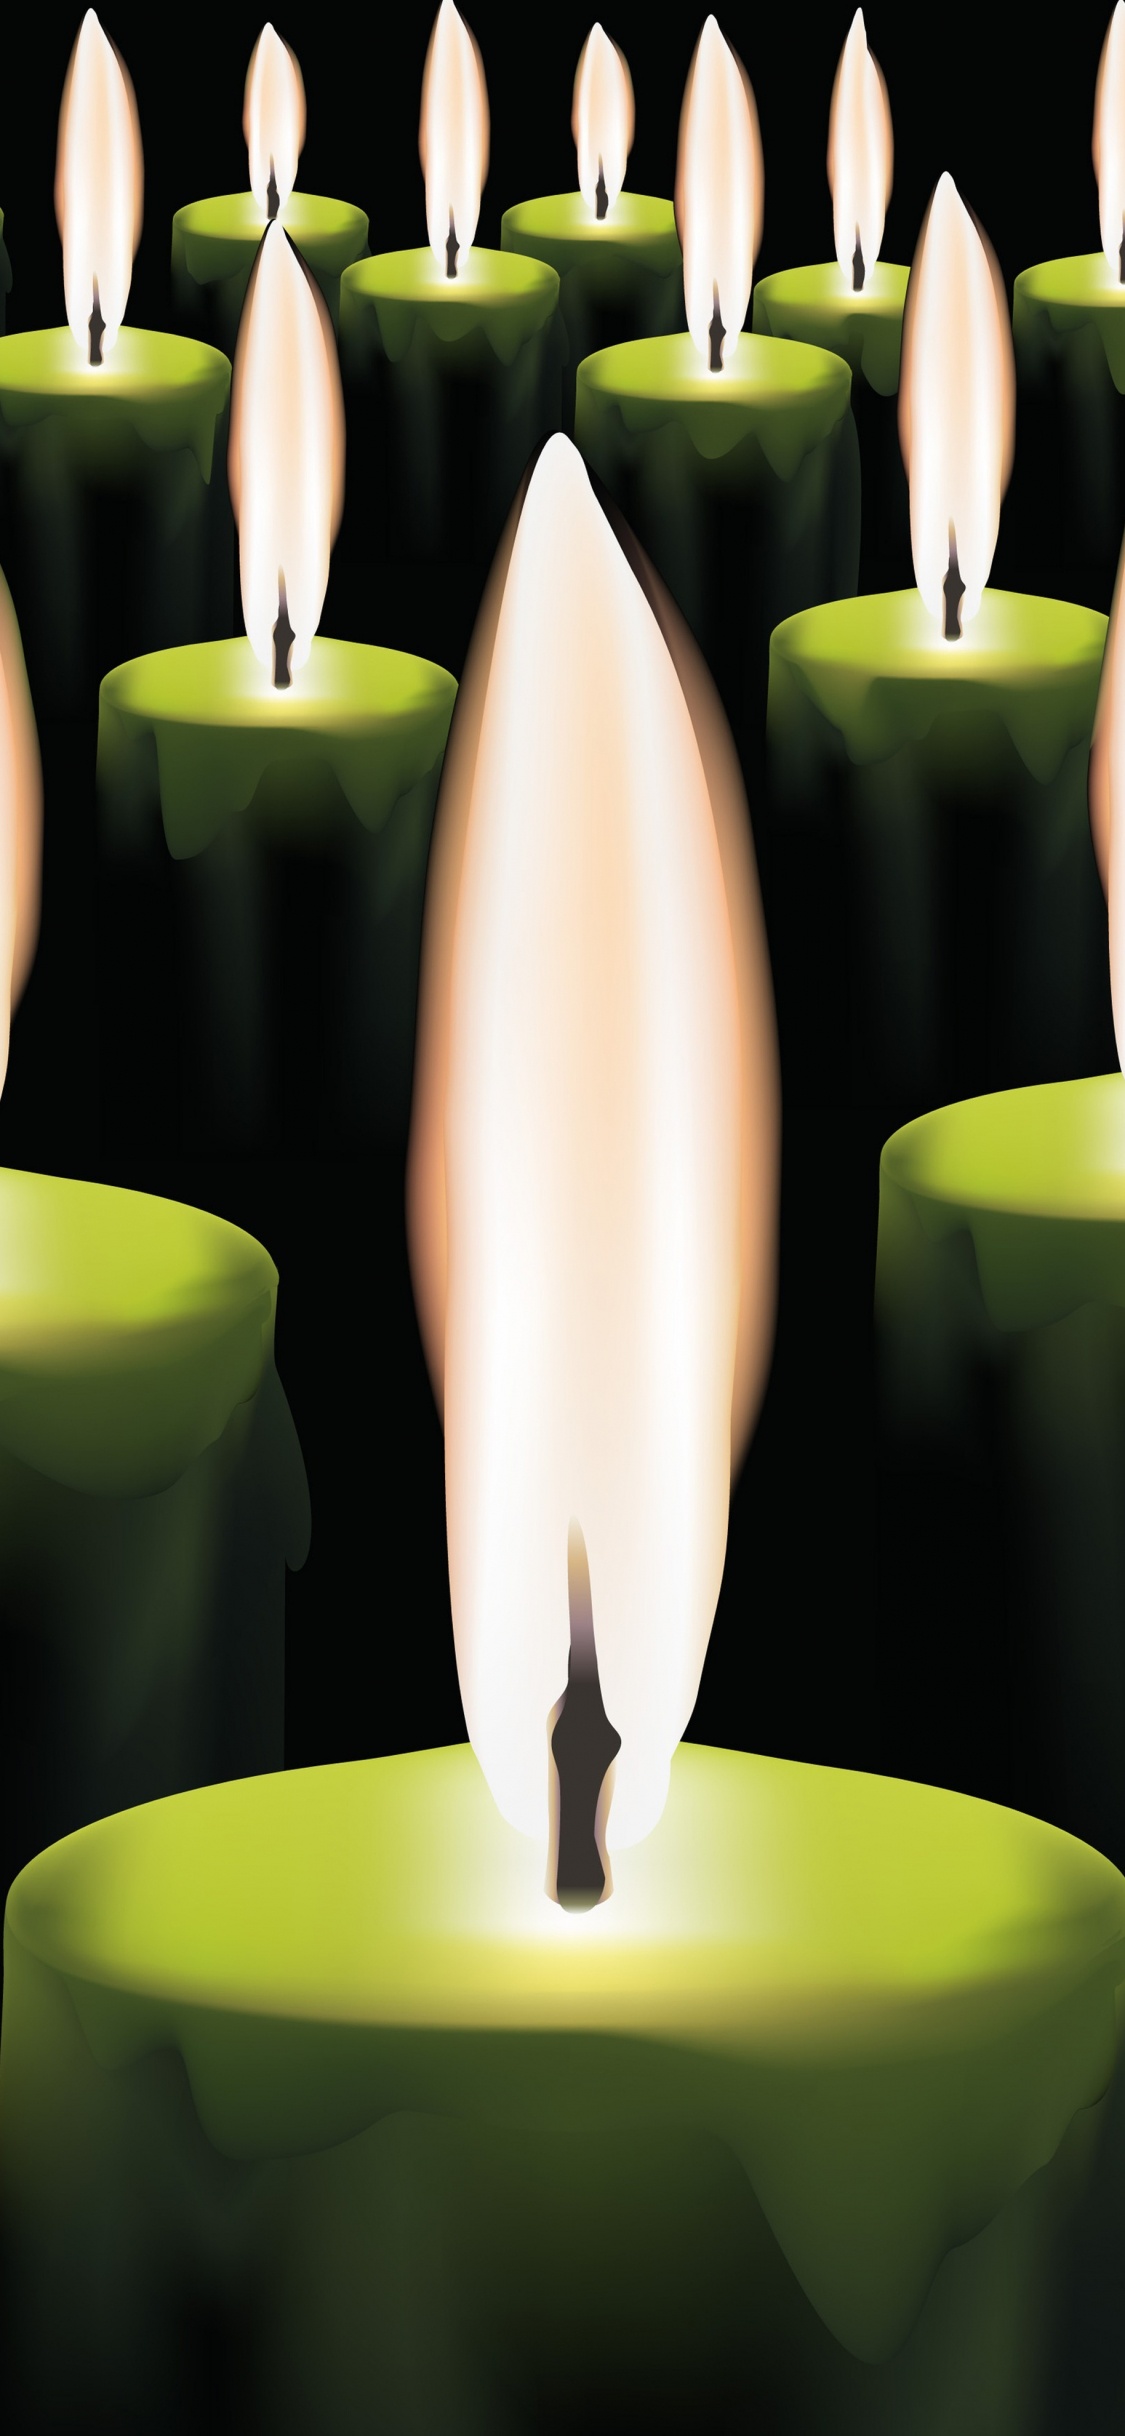 Brennende Kerzen, Kerze, Flamme, Licht, Wachs. Wallpaper in 1125x2436 Resolution